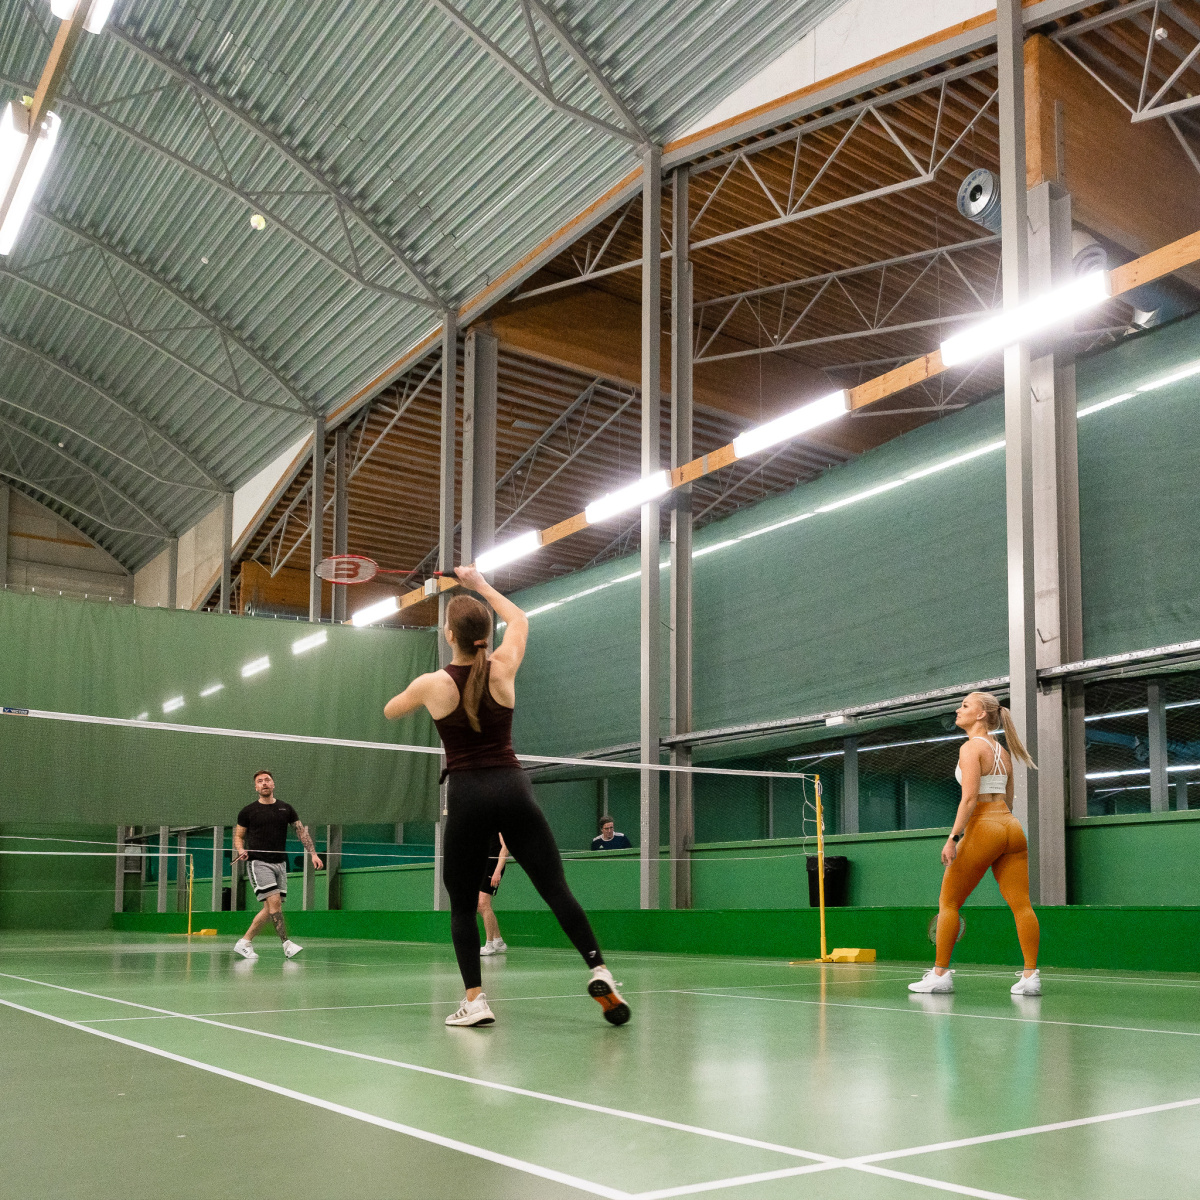 Tennis, sulis, squash, pöytätennis, pickleball, Liikuntakeskus Hukka, Oulu